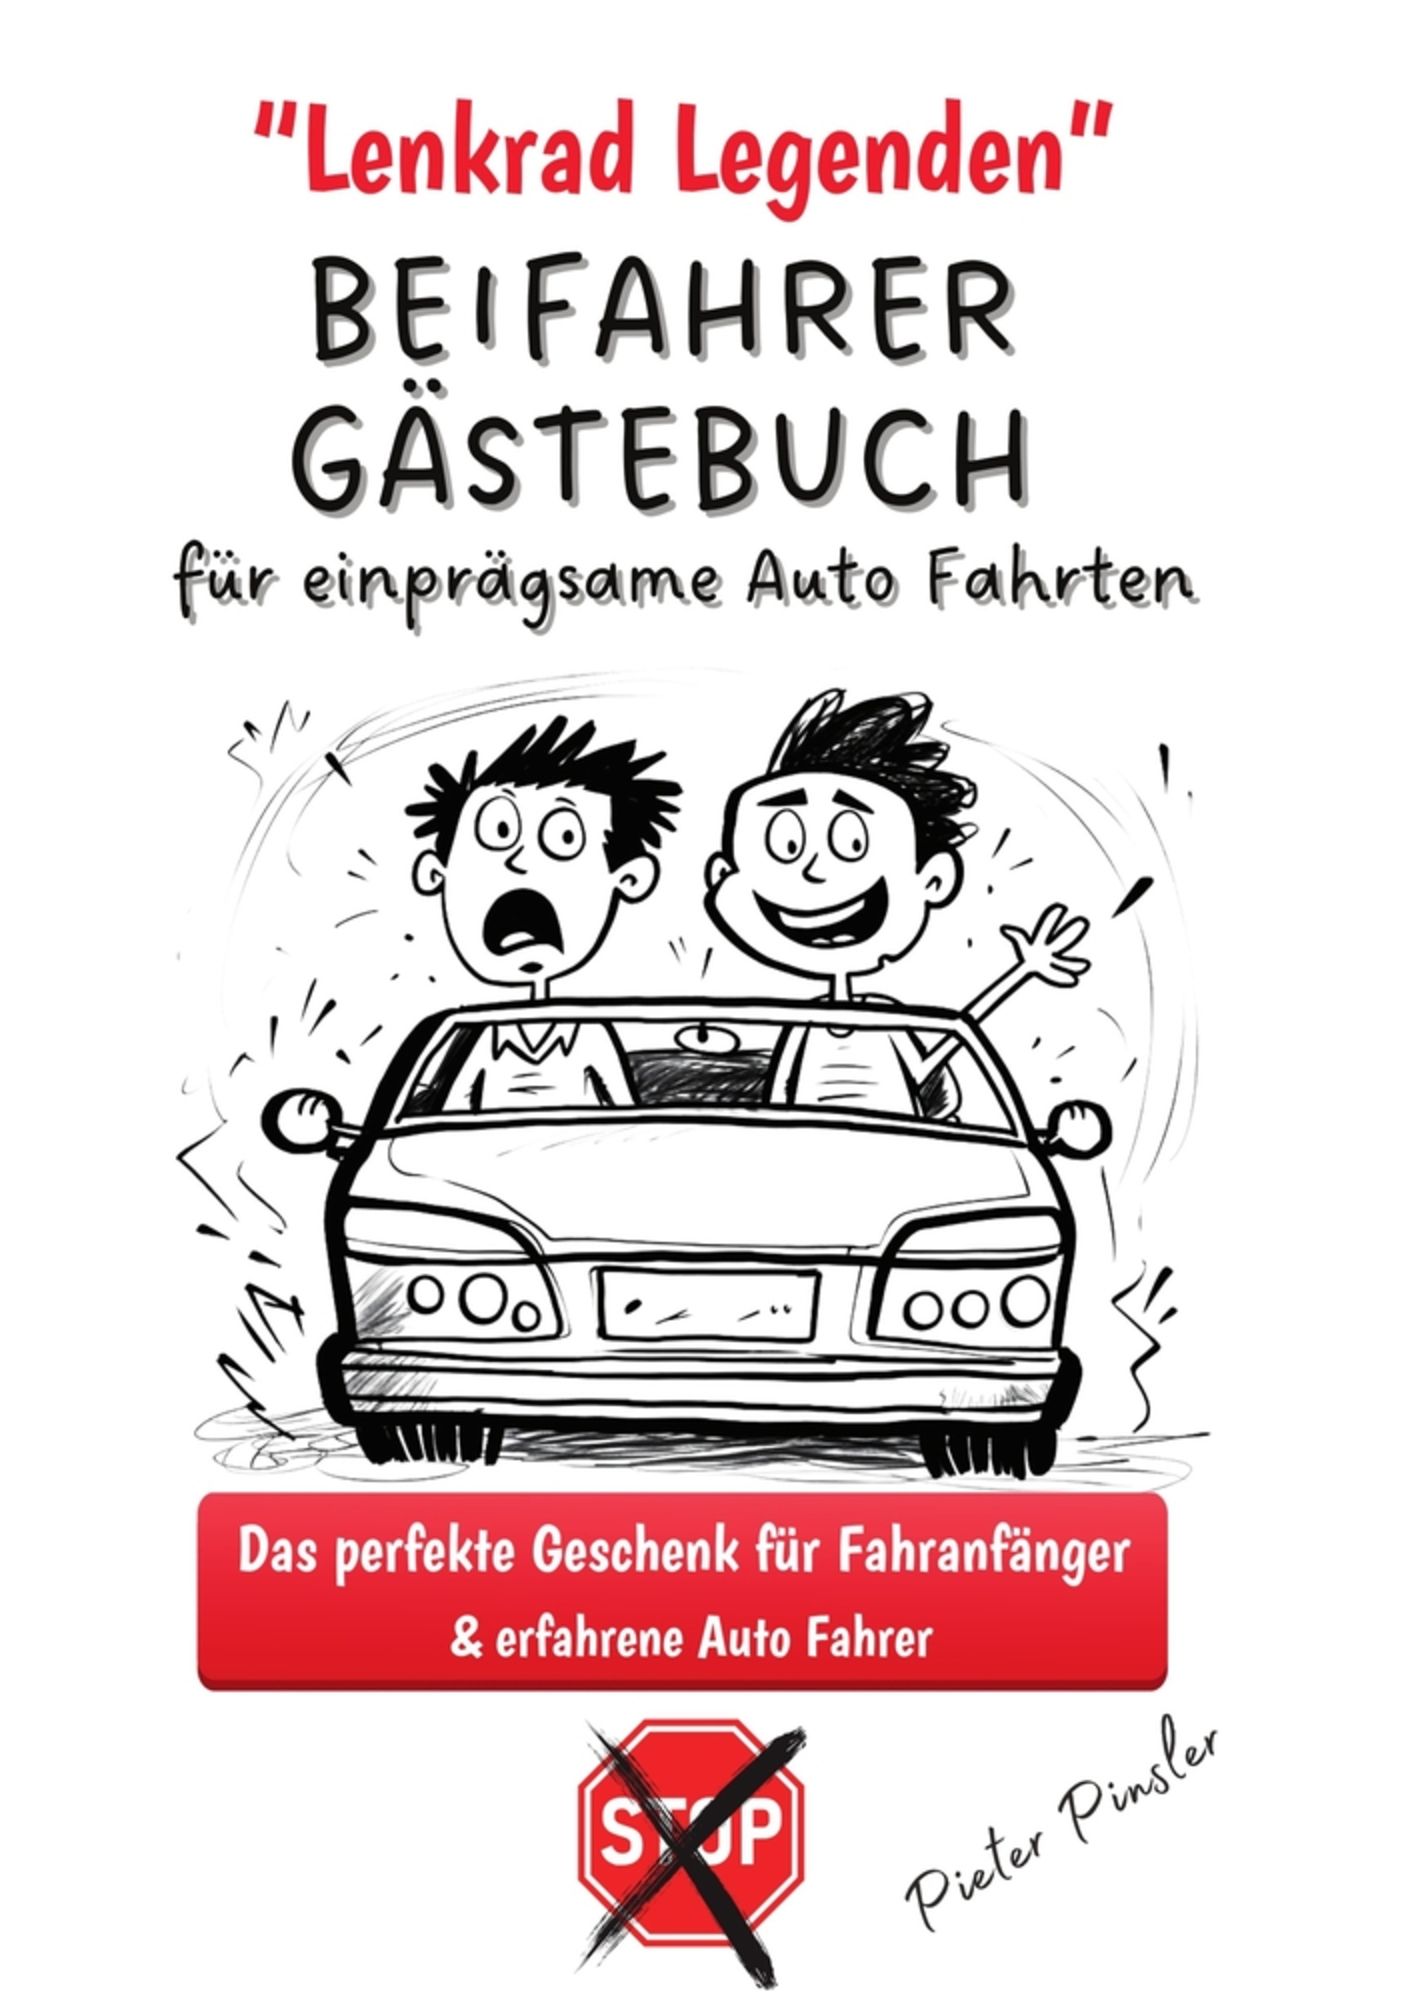 Lenkrad Legenden - BEIFAHRER GÄSTEBUCH für einprägsame Auto Fahrten' von  'Pieter Pinsler' - Buch - '978-3-7579-7116-8